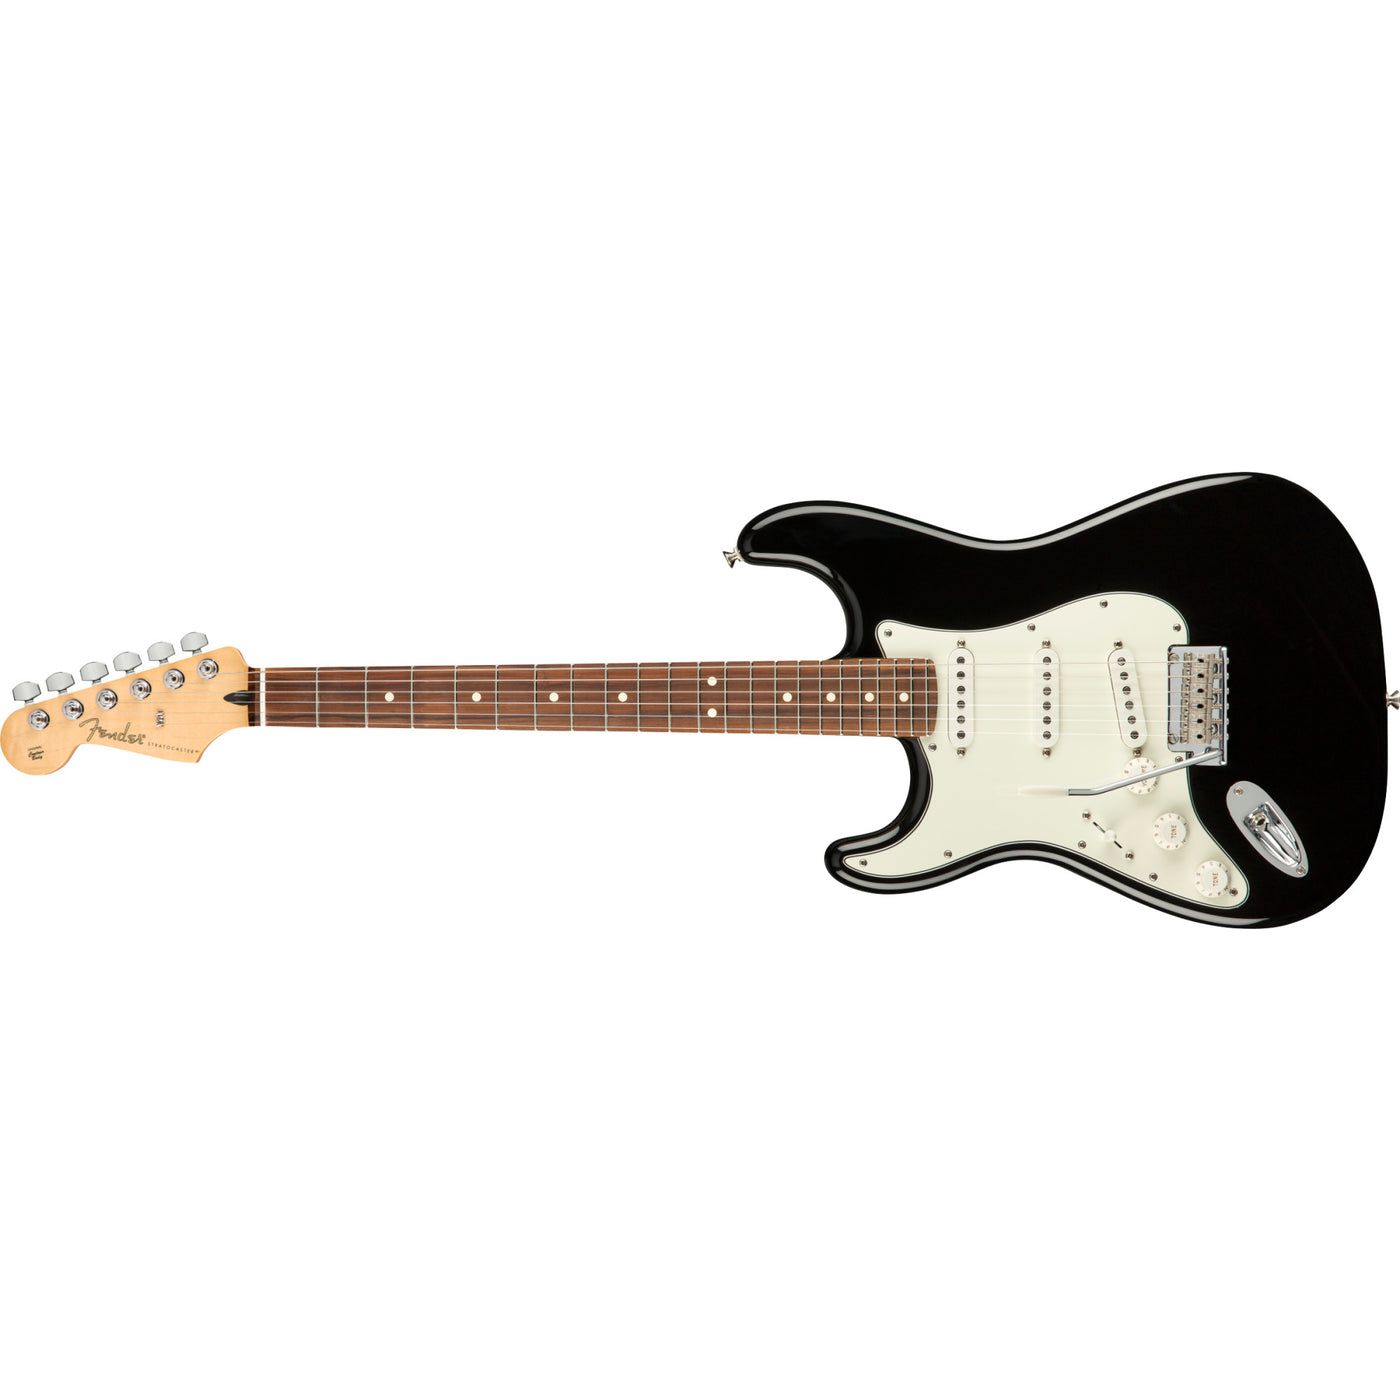 Fender Player Stratocaster Left-Handed Electric Guitar, Black (0144513506)